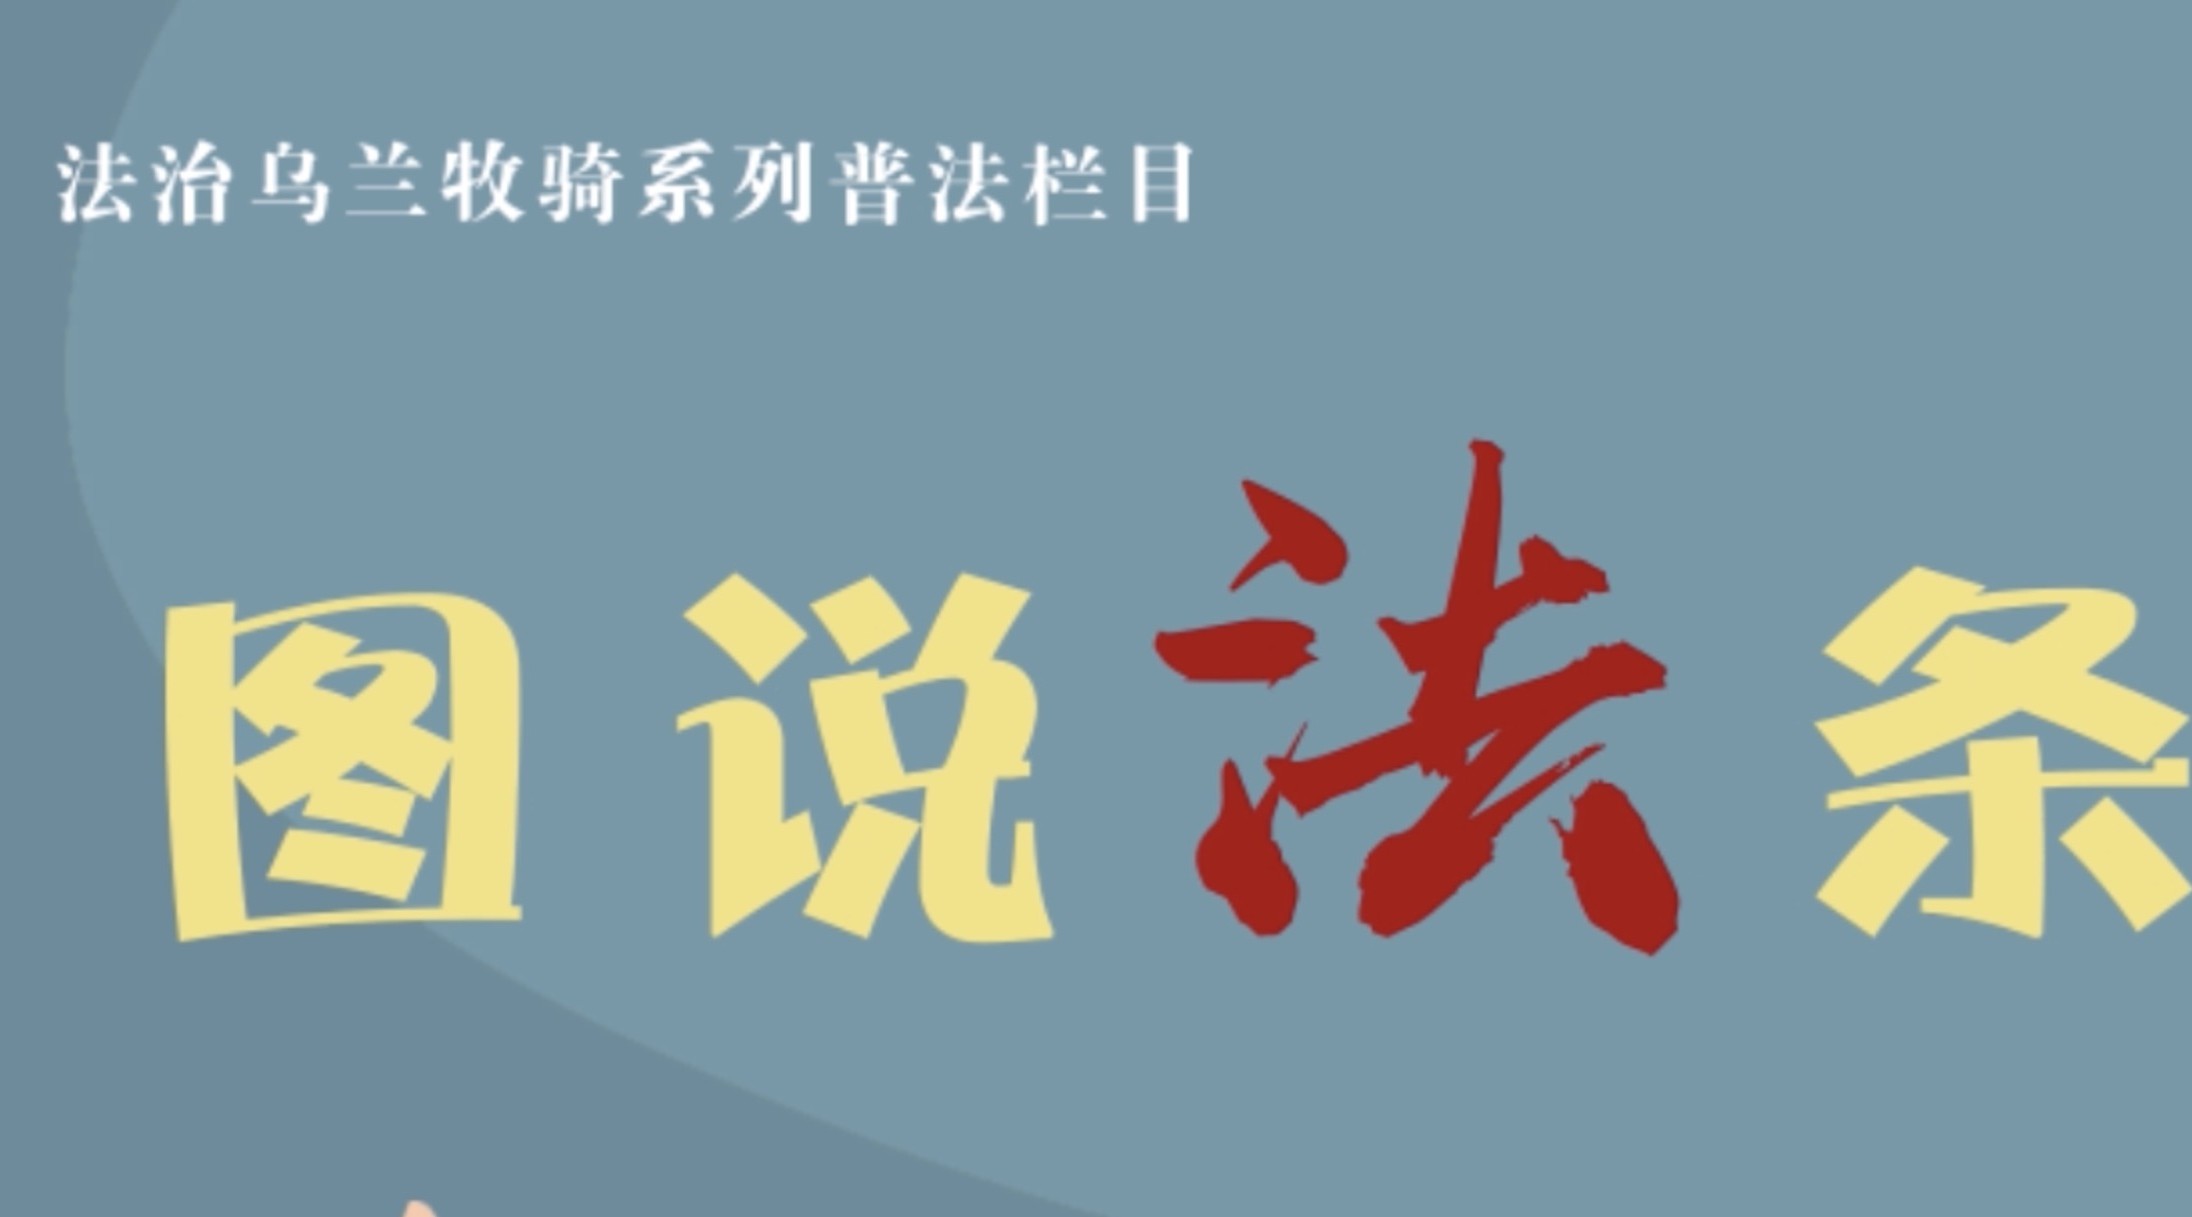 《图说法条》第二十六期《中华人民共和国社区矫正法》 